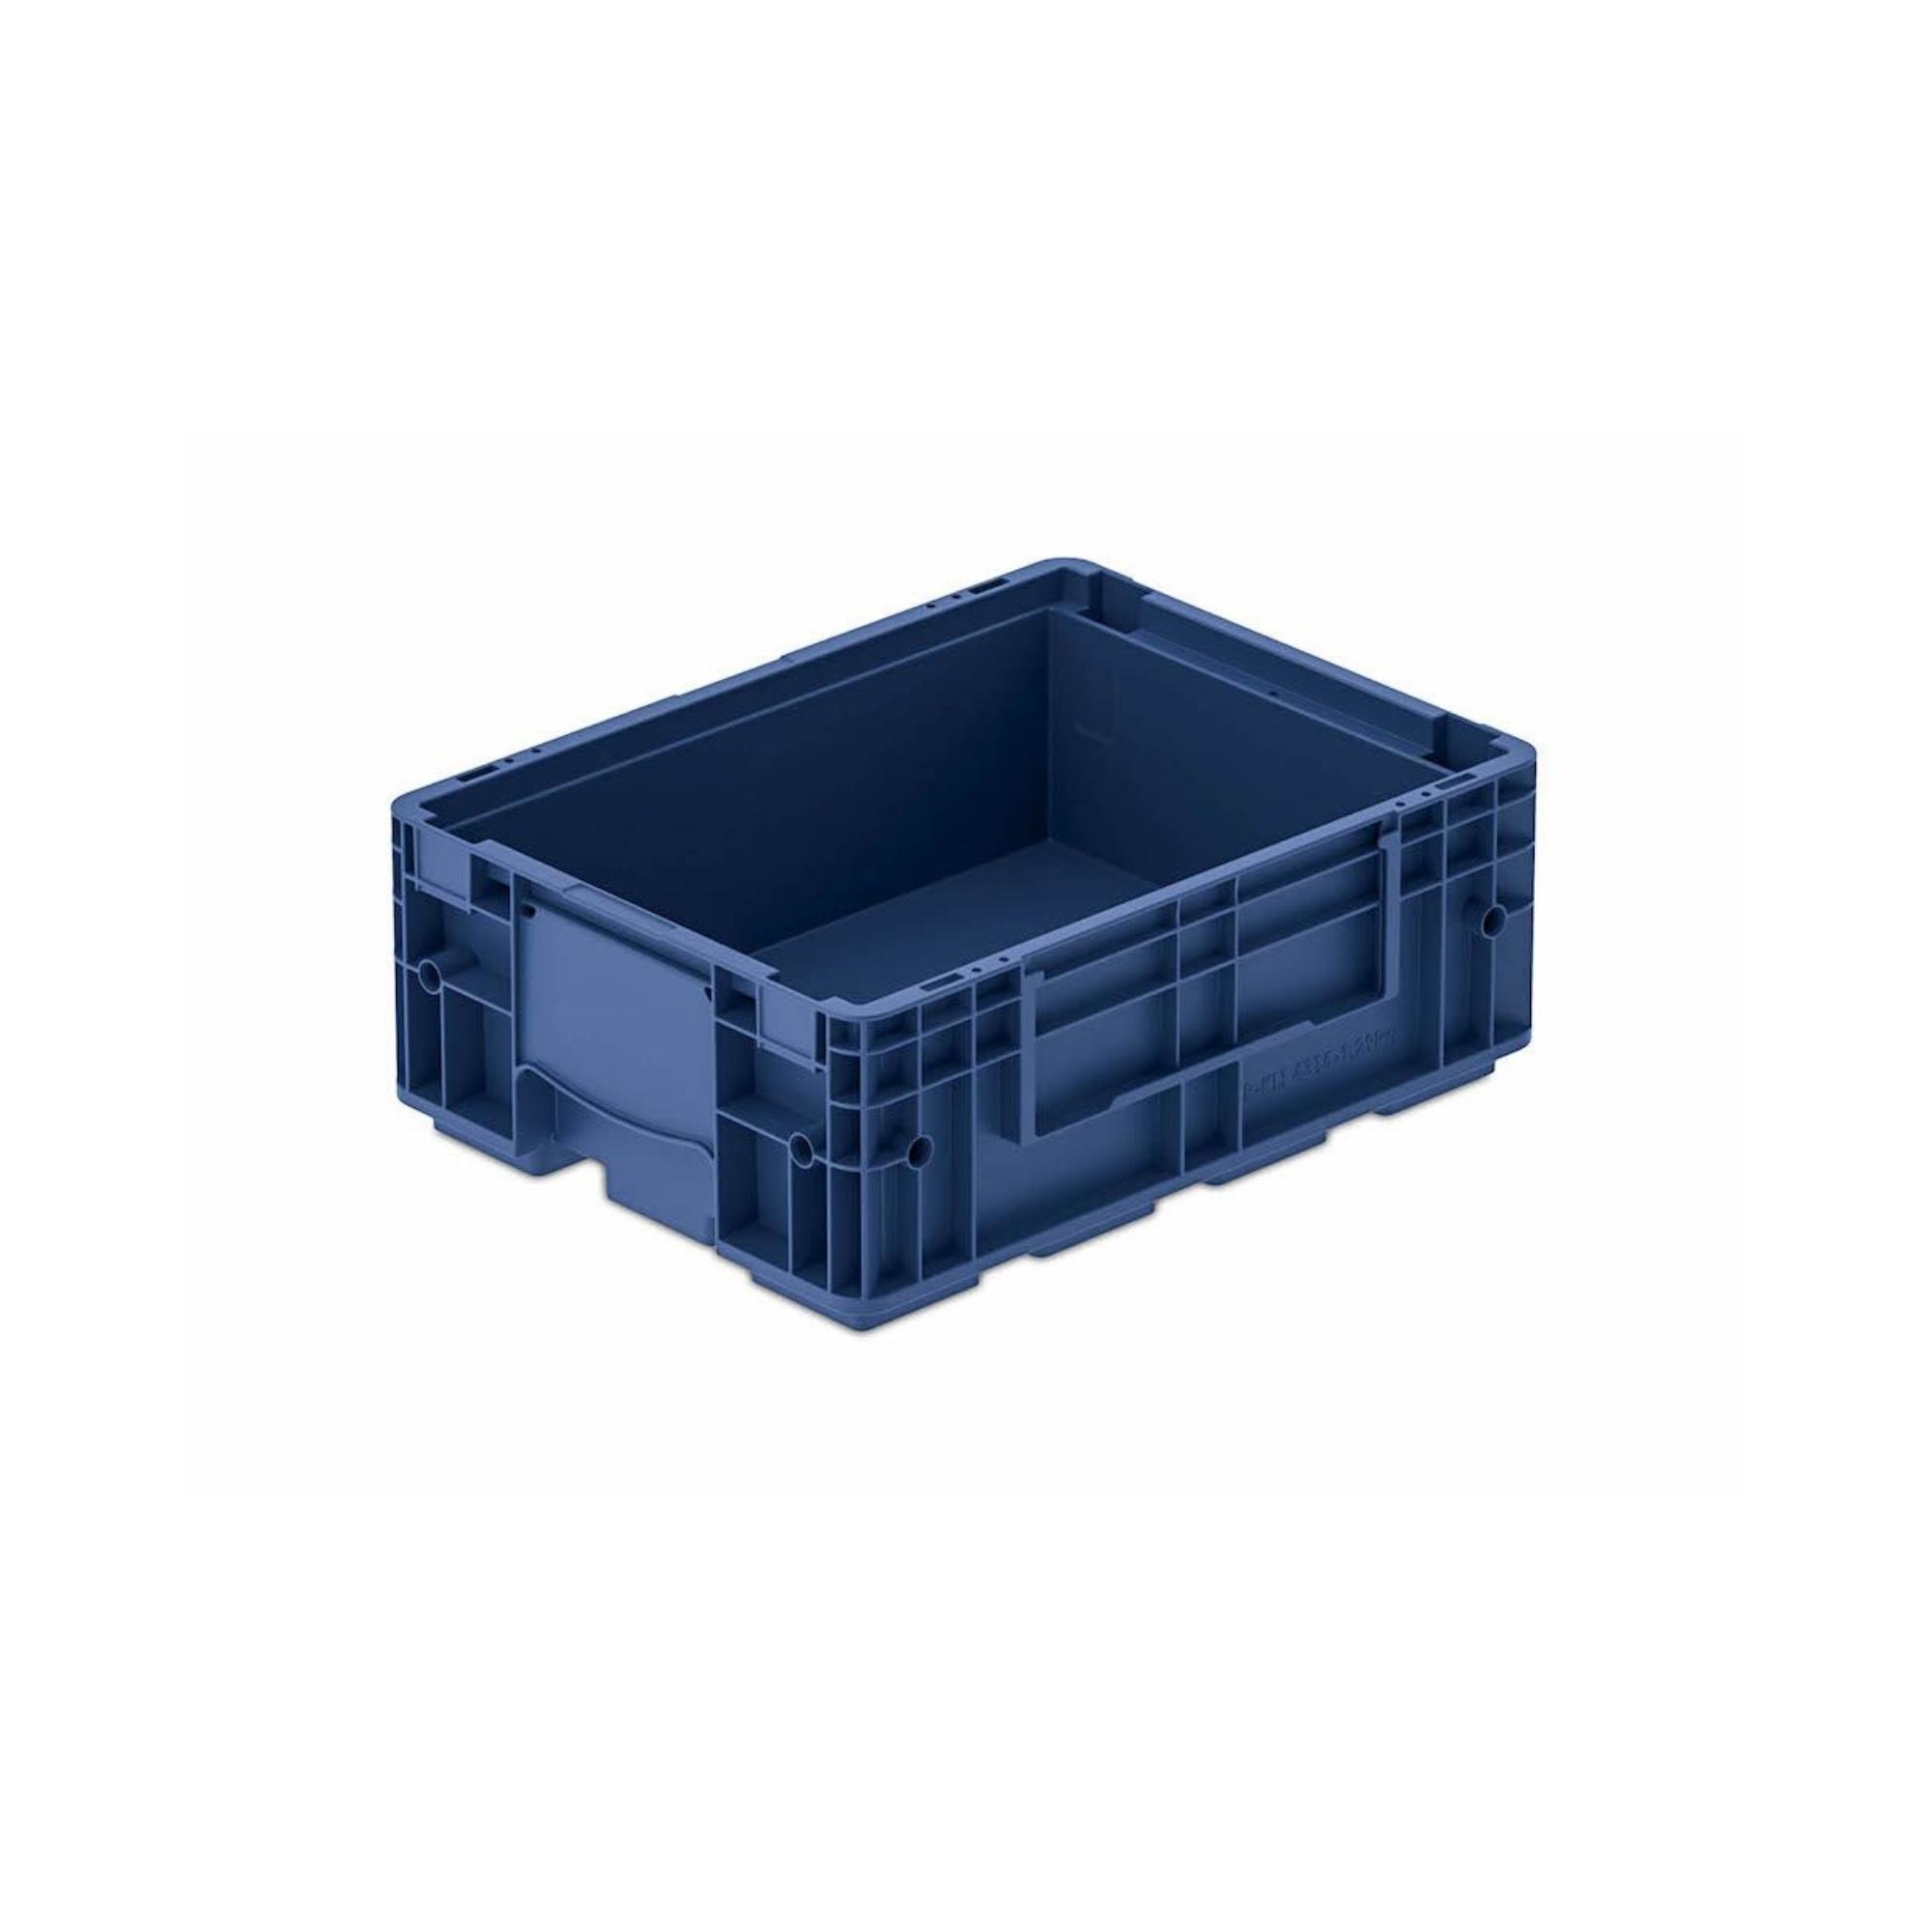 VDA KLT Kleinladungsträger mit Verbundboden | HxBxT 14,7x30x40cm | 10 Liter | KLT, Transportbox, Transportbehälter, Stapelbehälter